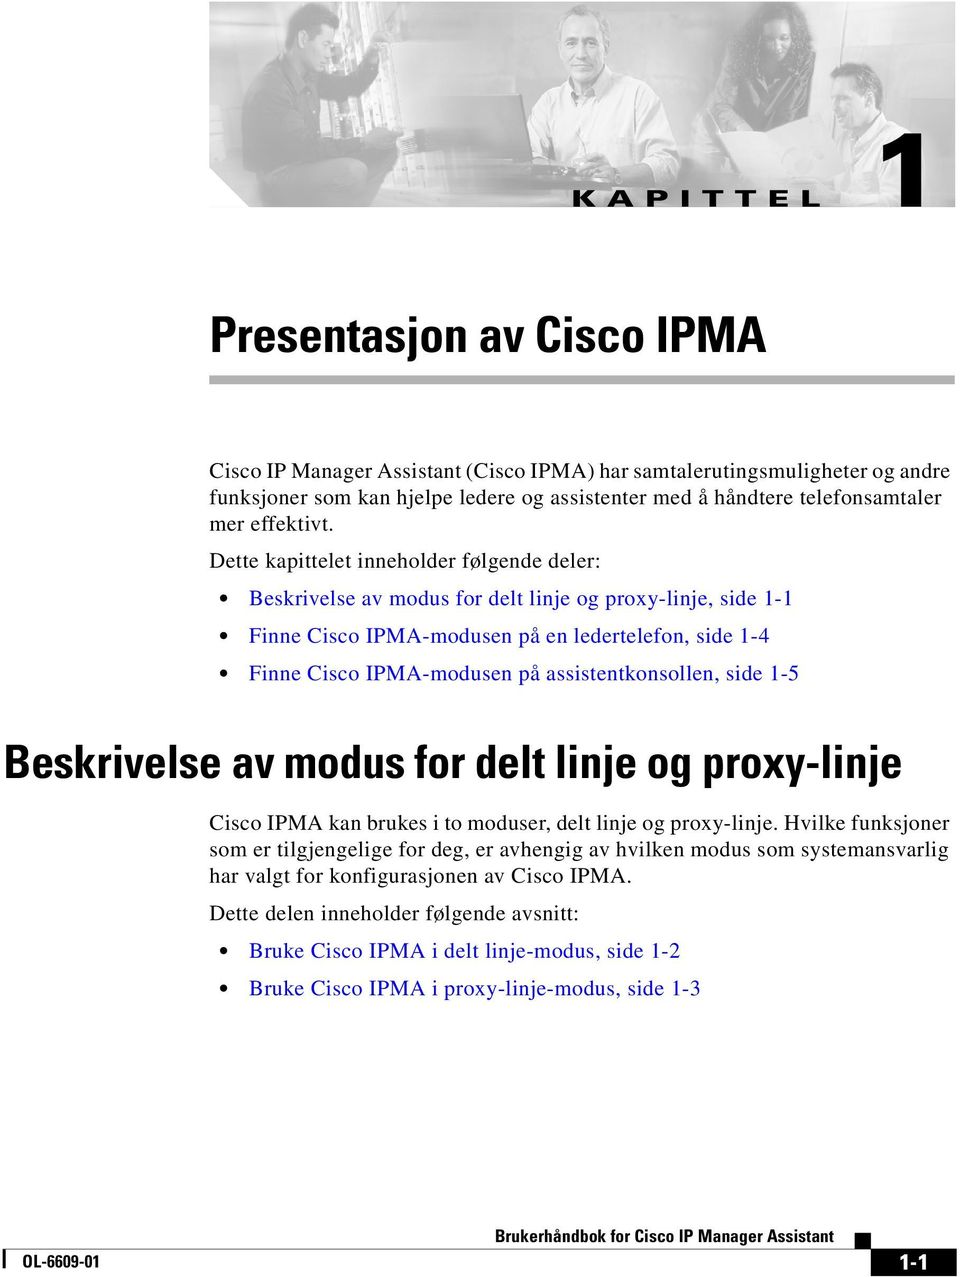 Dette kapittelet inneholder følgende deler: Beskrivelse av modus for delt linje og proxy-linje, side 1-1 Finne Cisco IPMA-modusen på en ledertelefon, side 1-4 Finne Cisco IPMA-modusen på